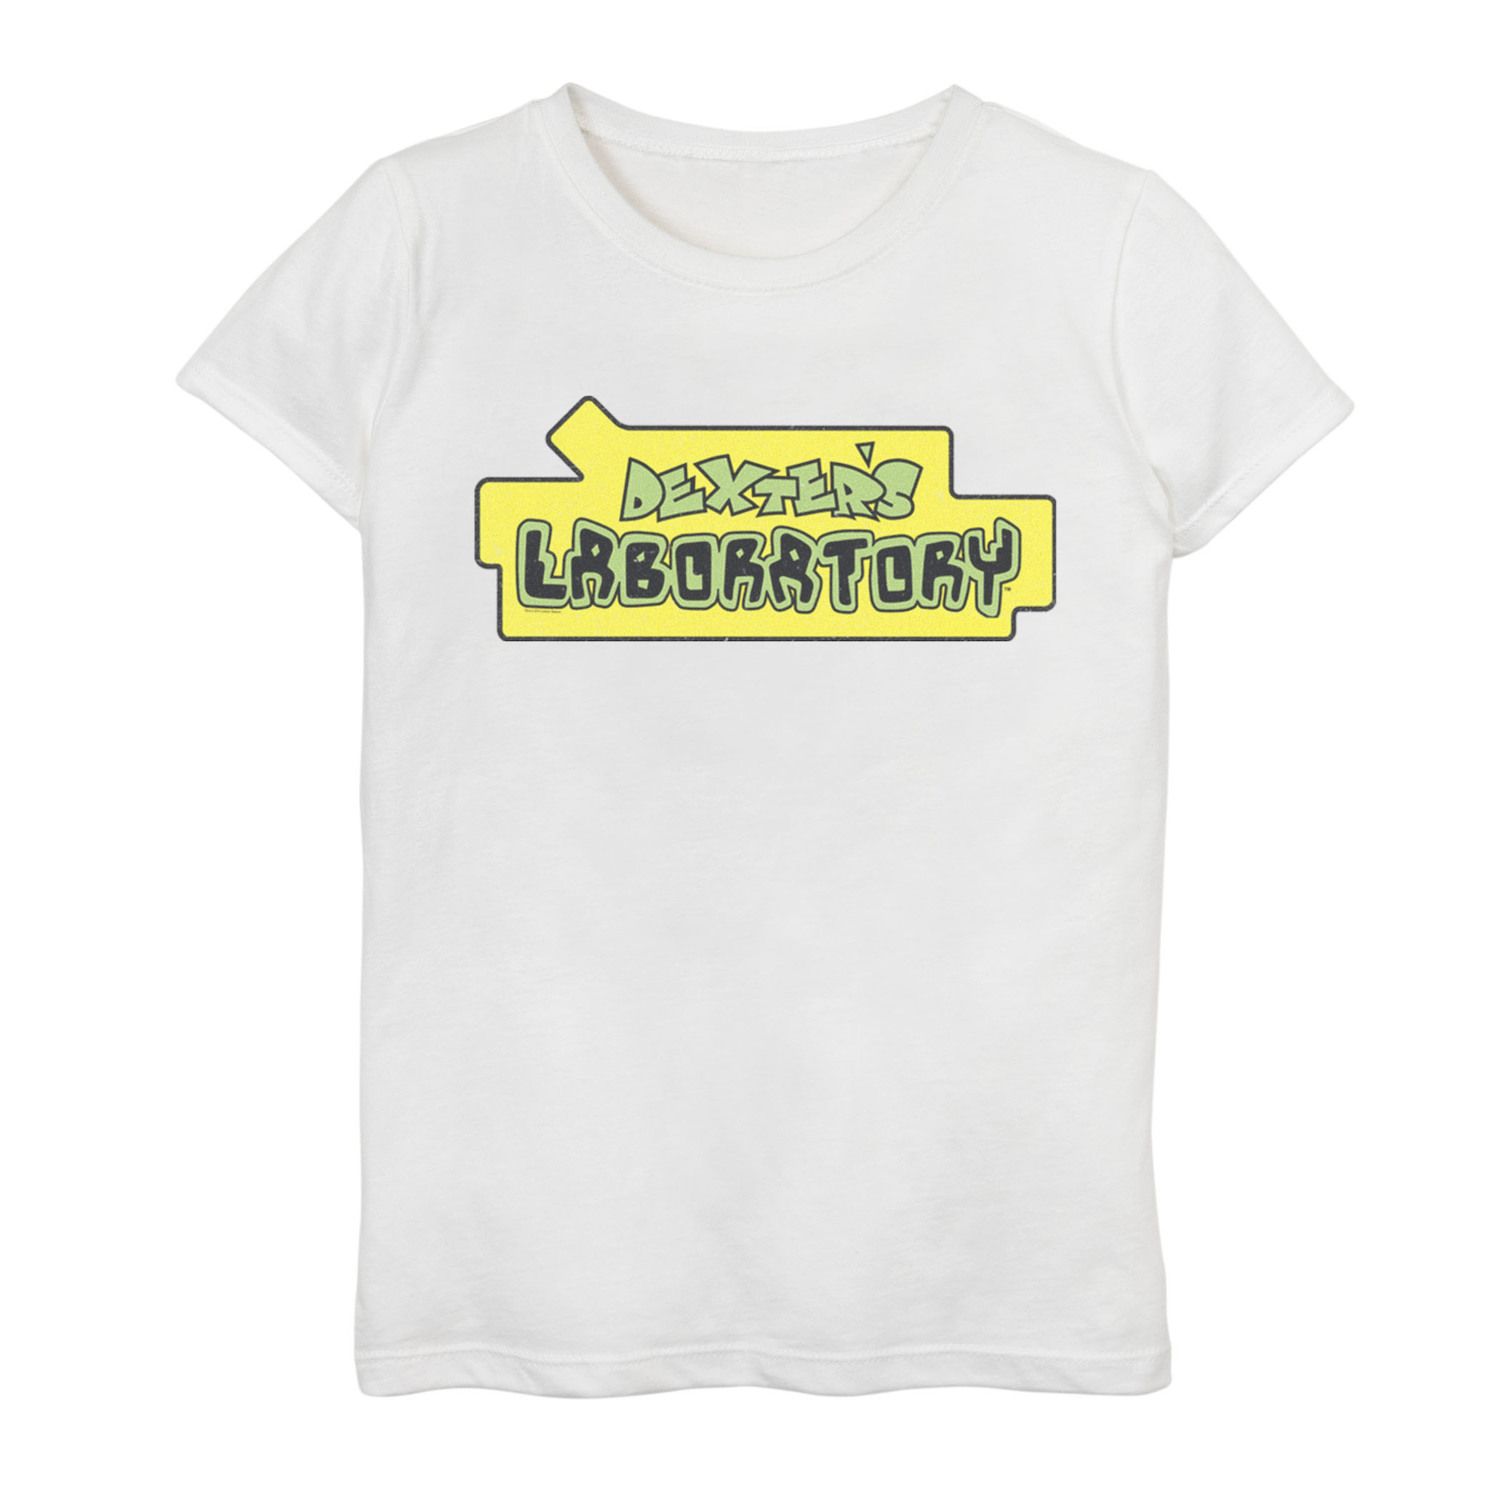 Футболка с оригинальным логотипом и графическим рисунком «Лаборатория Декстера» для девочек 7–16 лет Cartoon Network cartoon green